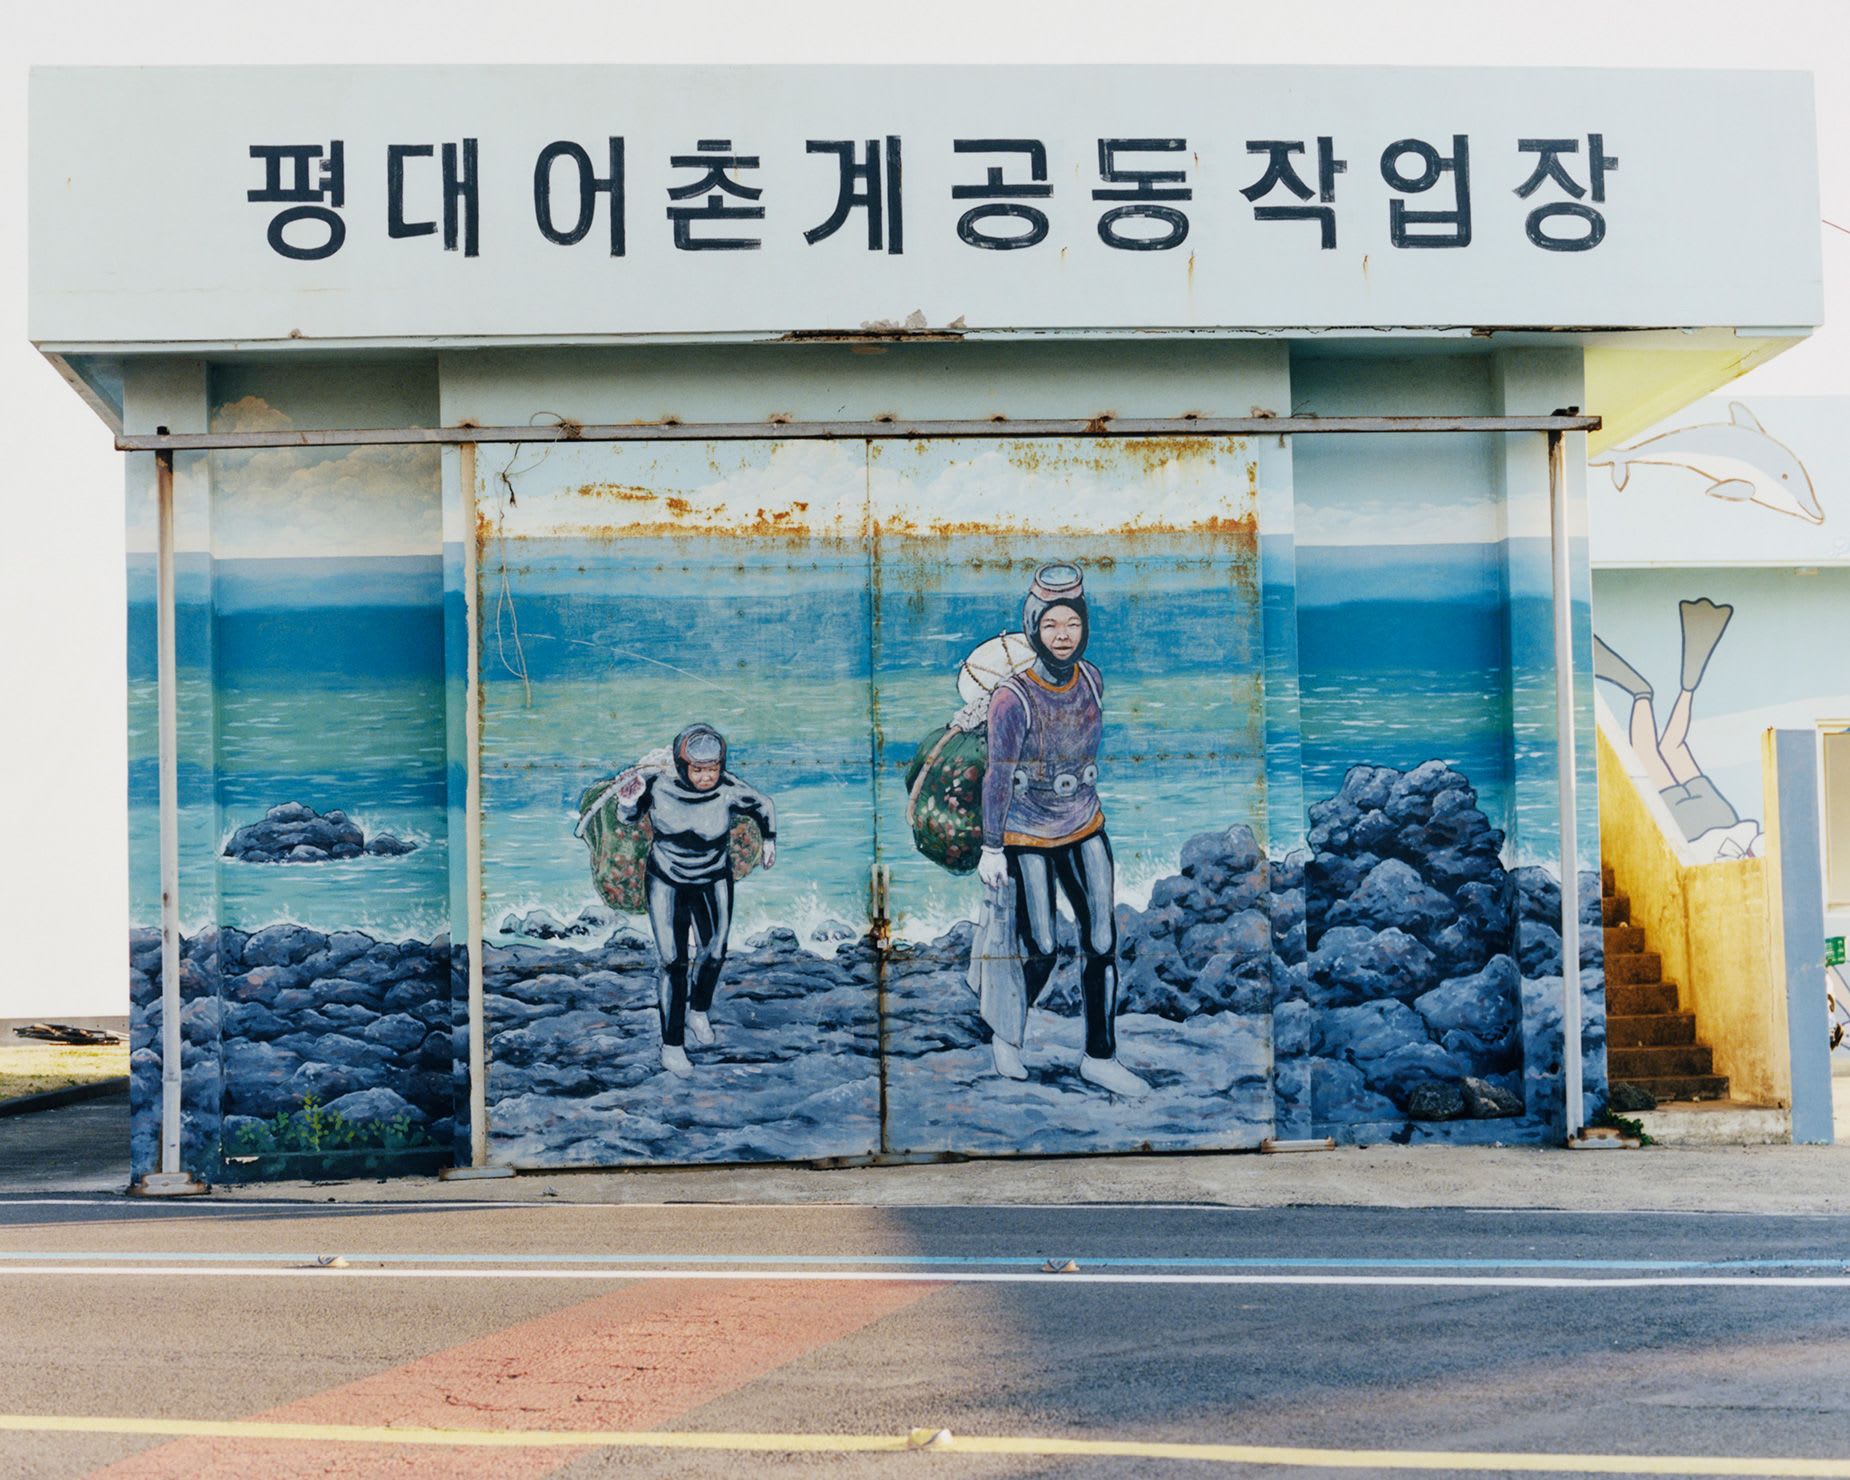 صور مذهلة تلتقط حوريات البحر الحقيقيات في كوريا الجنوبية